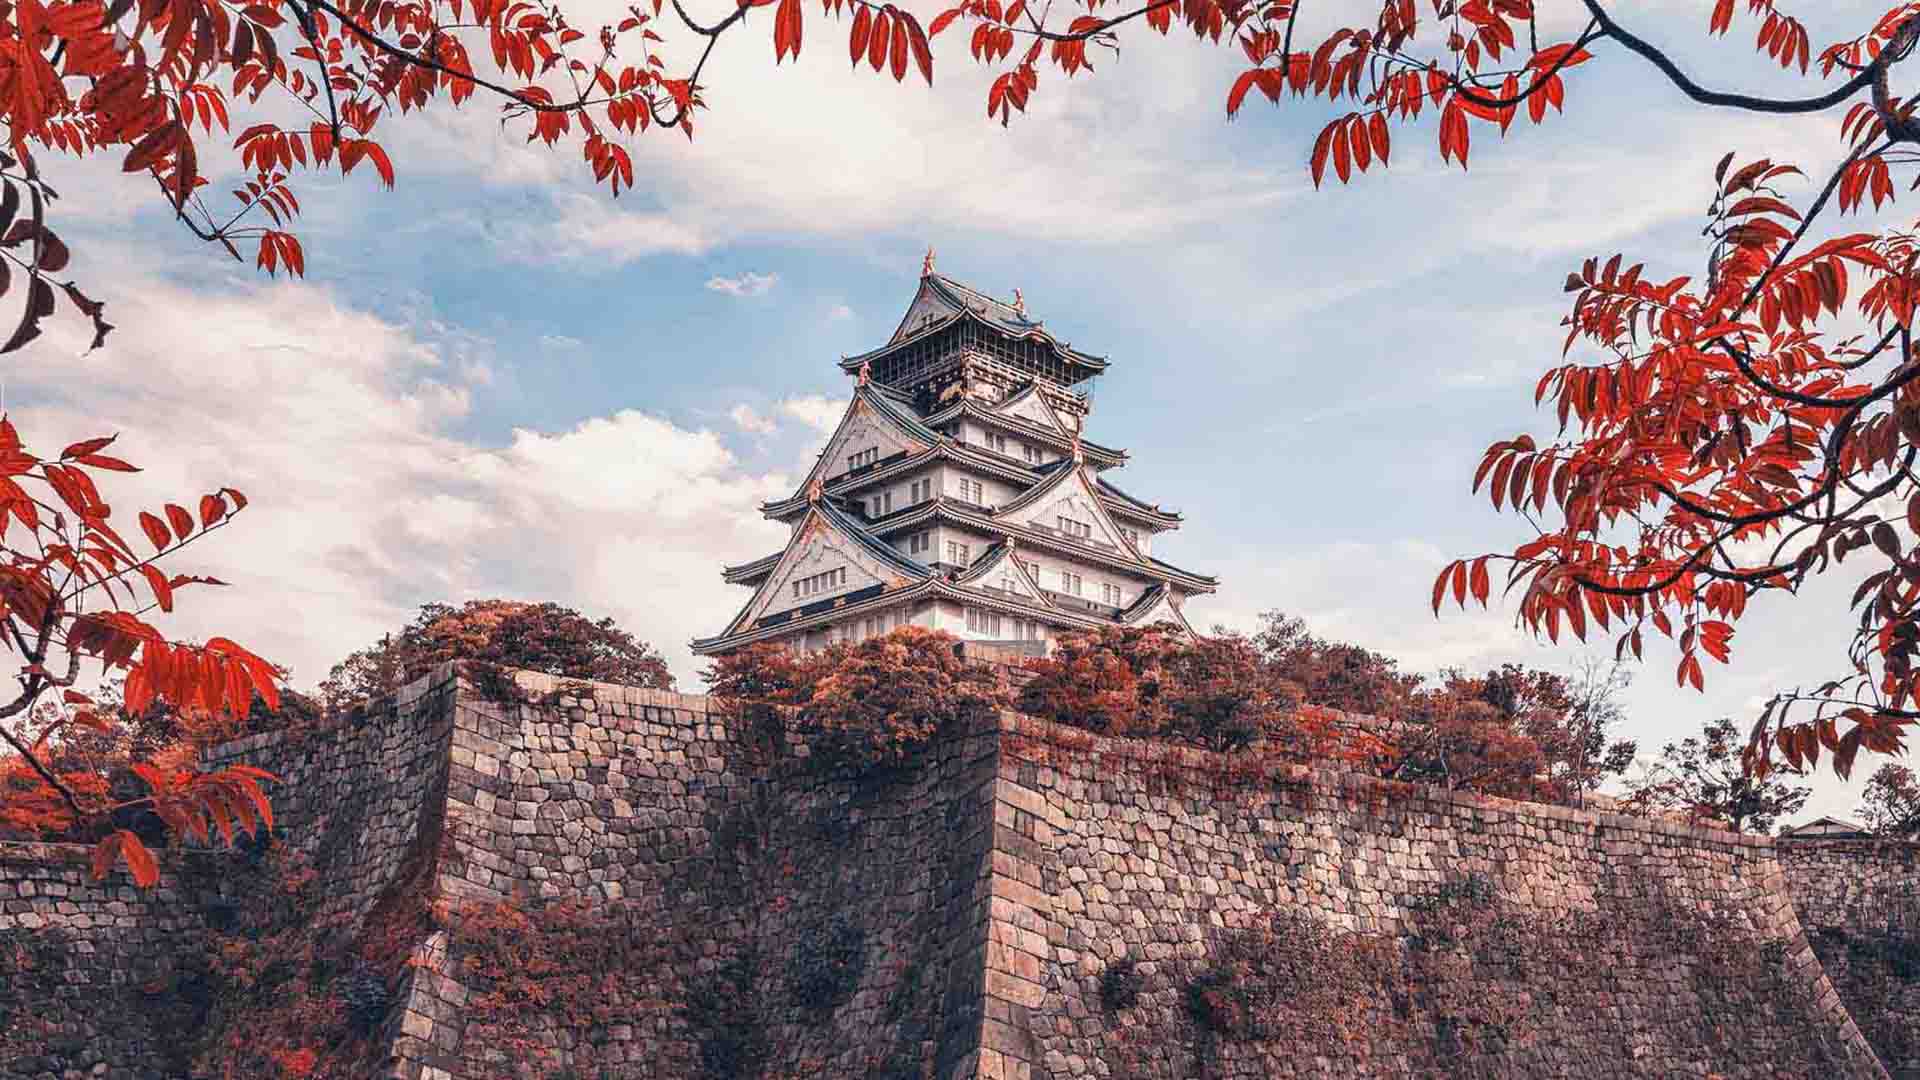 יפן משיגה את המקום השלישי בדוח תחרותיות התיירות העולמית